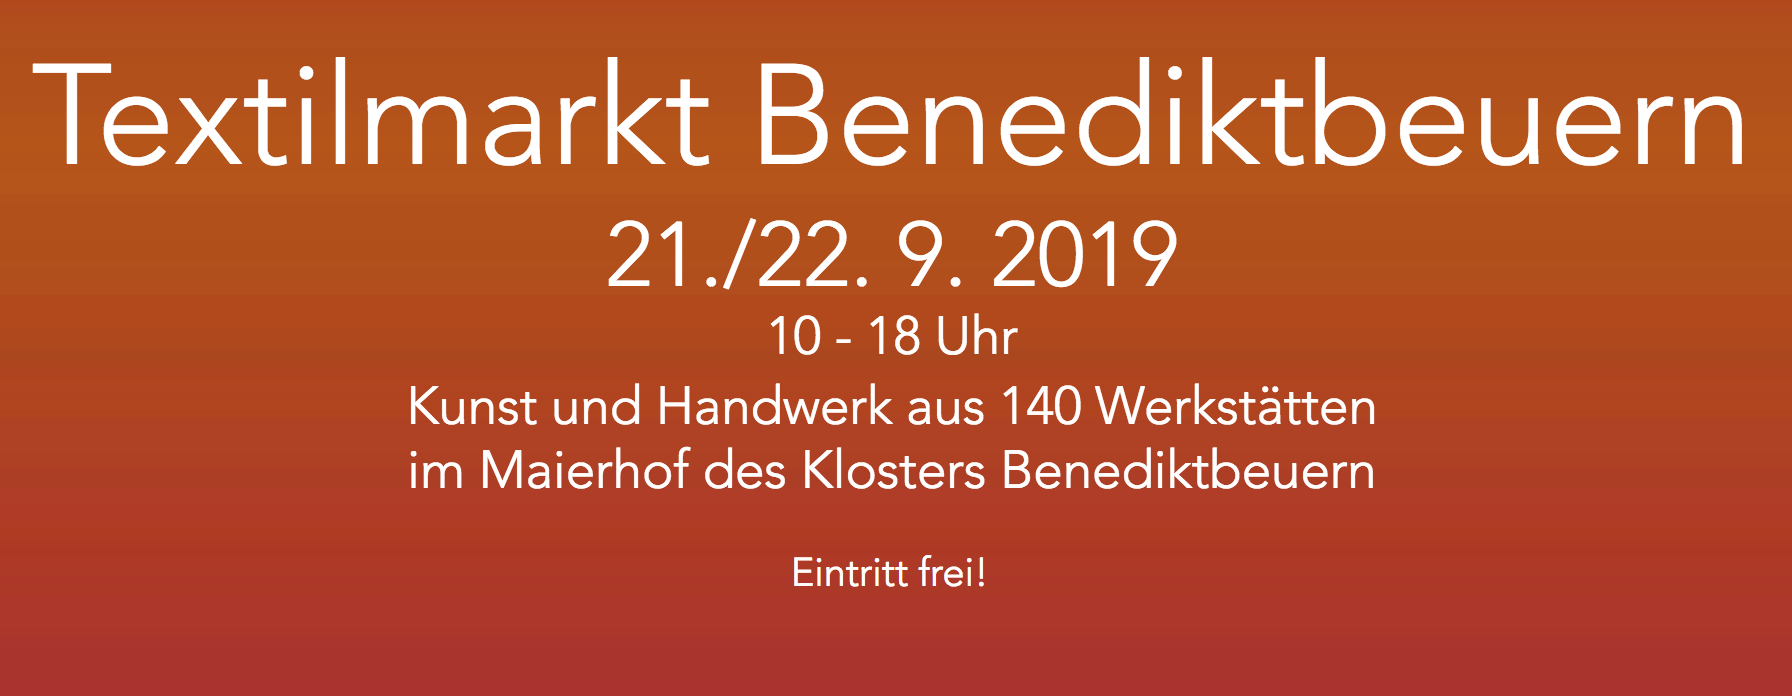 Textilmarkt Benediktbeuern_2019_textilmarkt-benediktbeuern.de.png